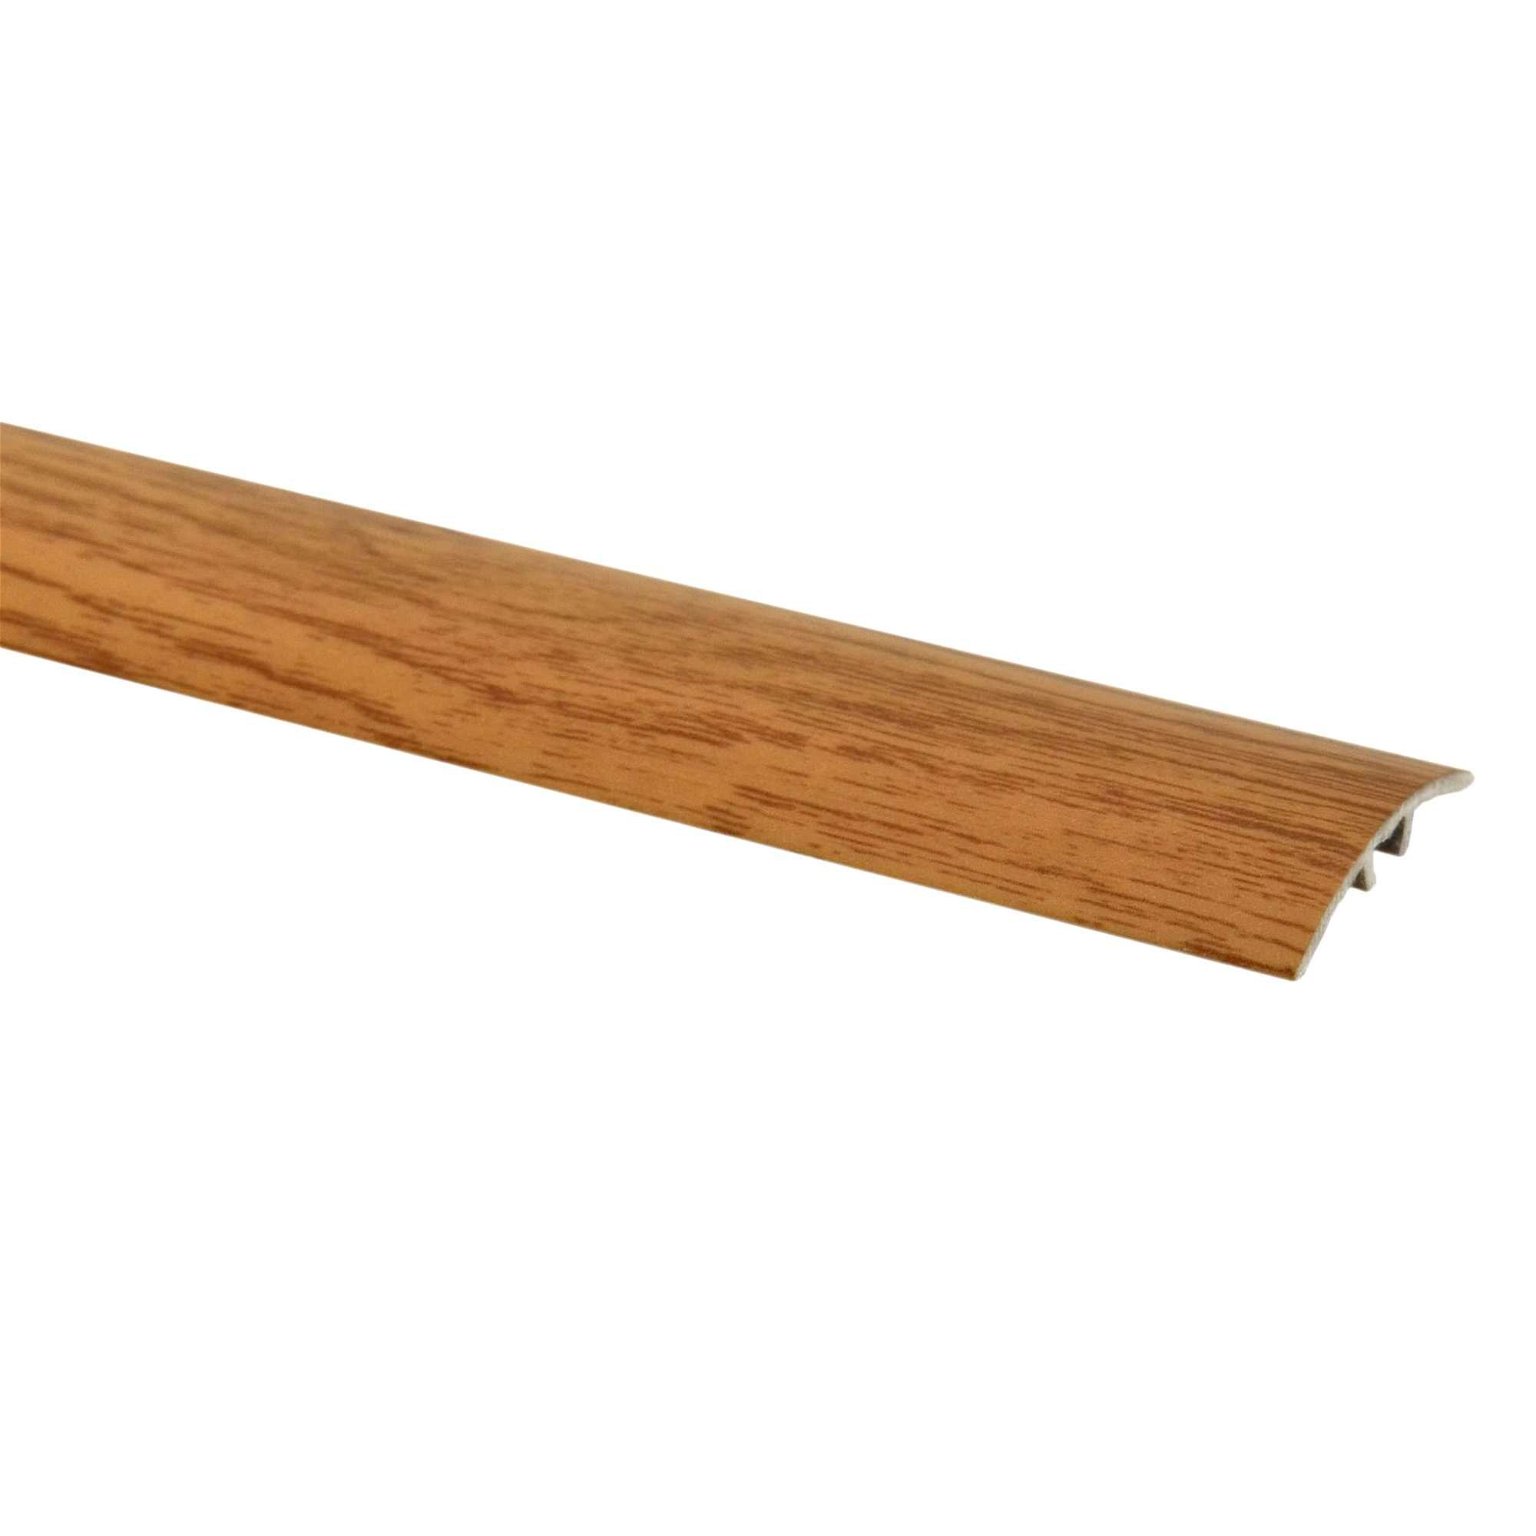 Aliumininė grindų juostelė SM1 W5, kilniojo ąžuolo sp., 30 mm pločio, 186 cm ilgio